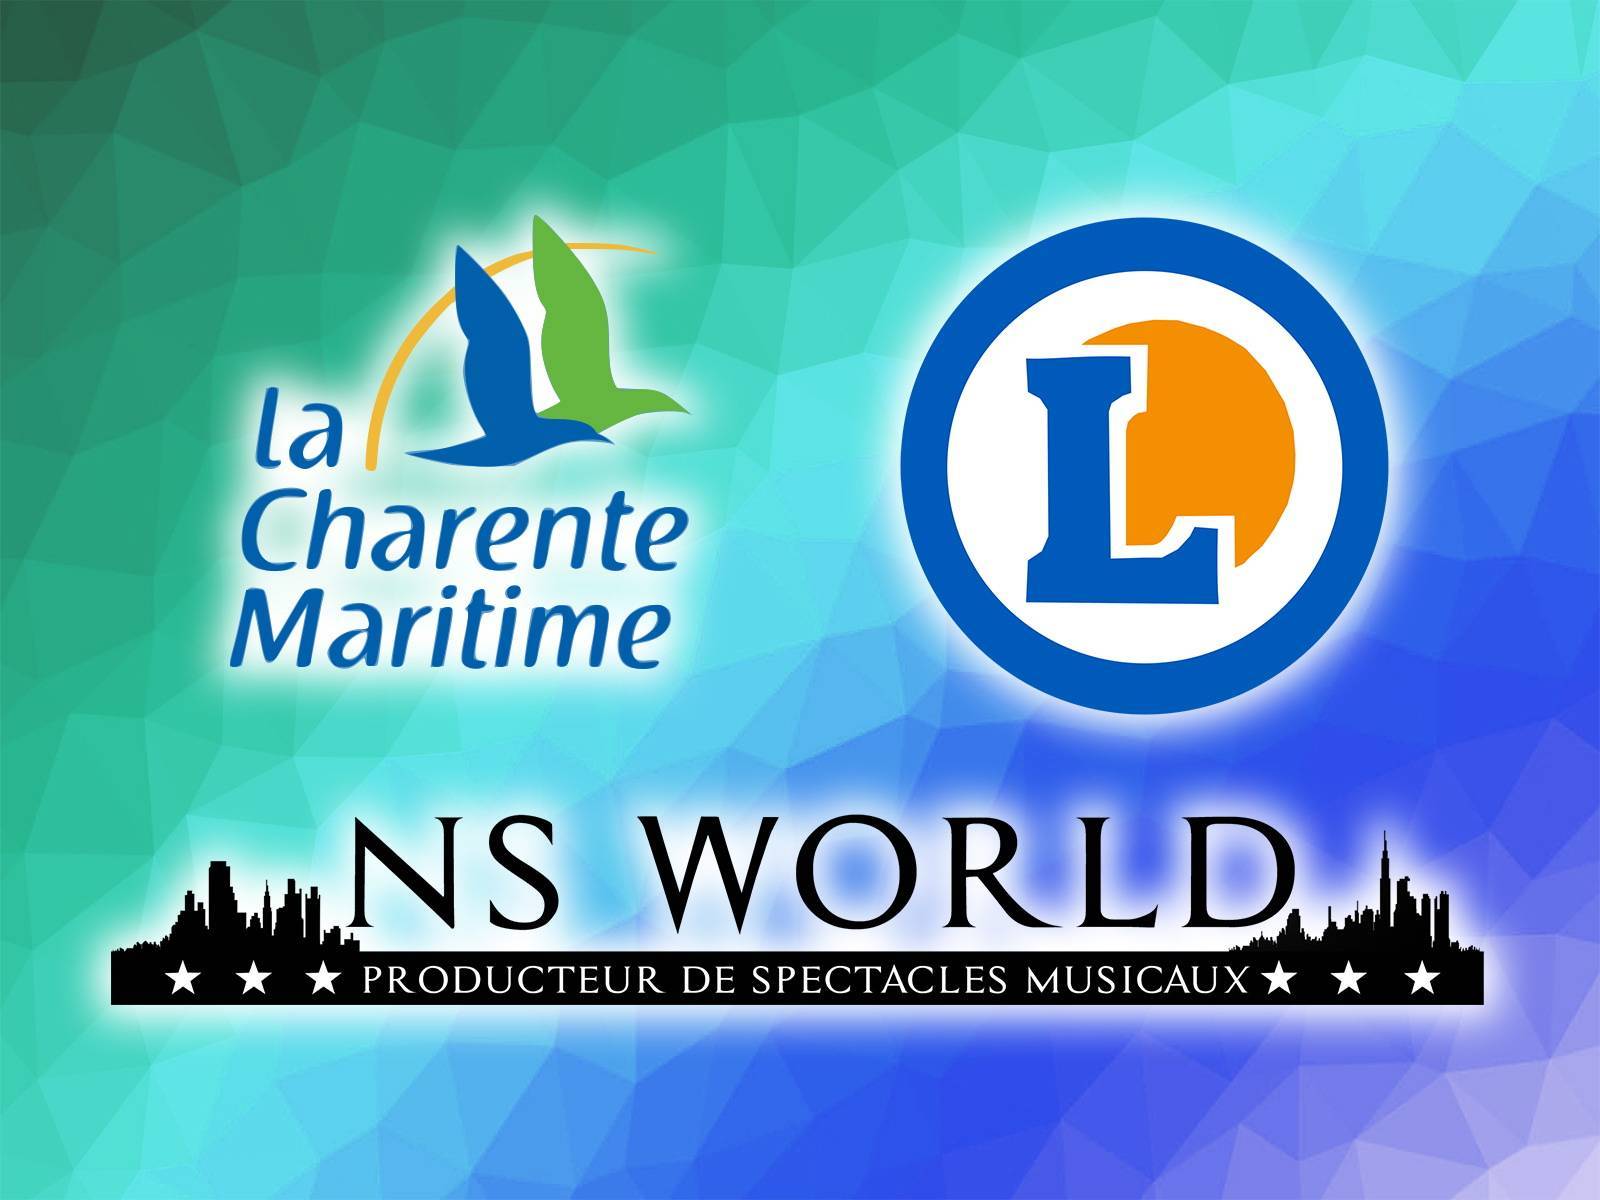 Les hypermarchés E.Leclerc de Charente-Maritime (17) ont fait appel à NS World pour d'incroyables spectacles musicaux (partie 1/2)